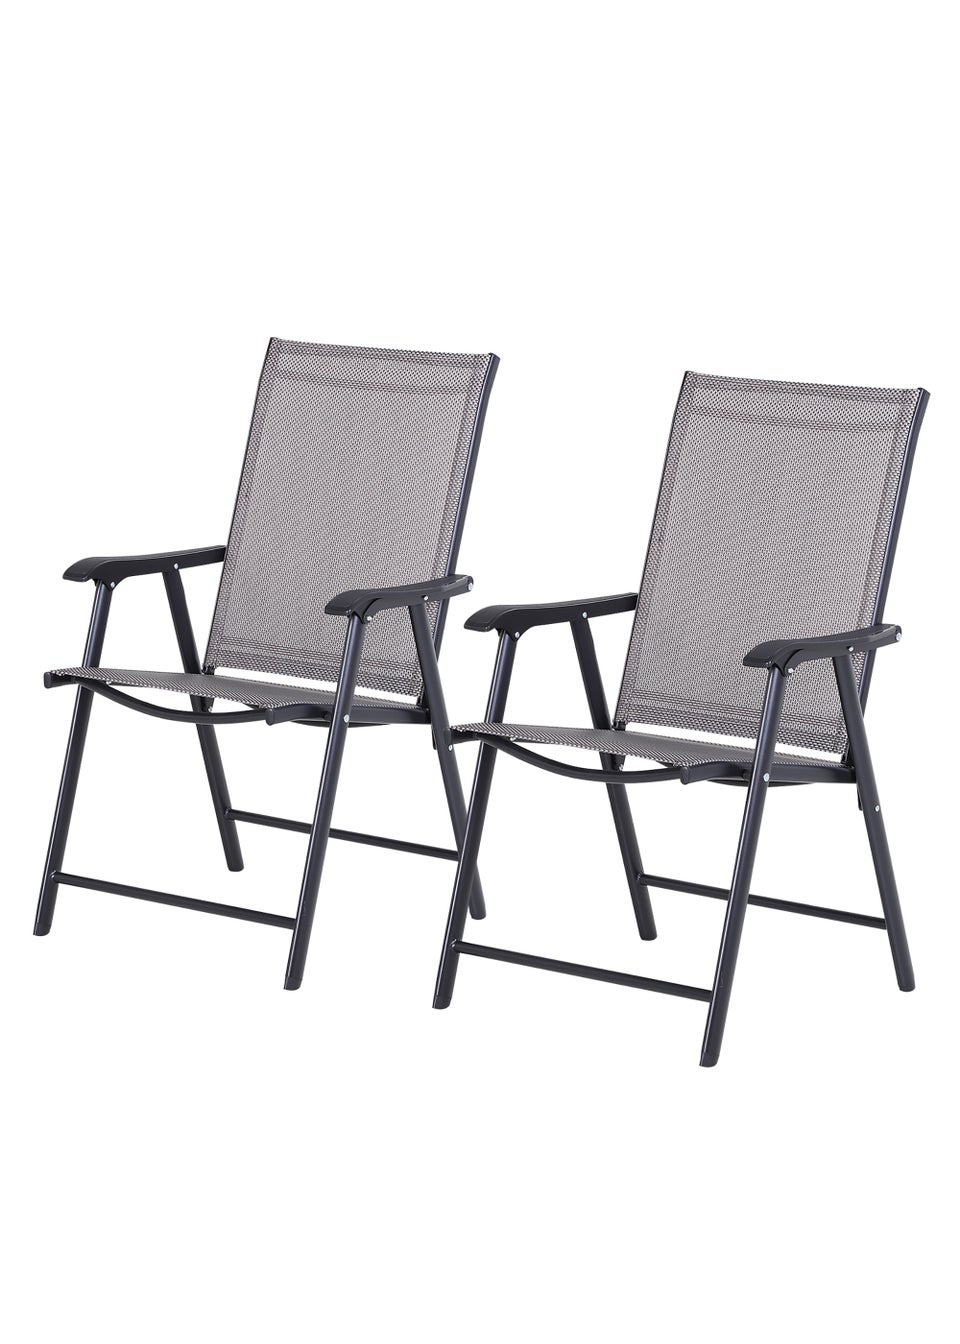 Outsunny 2 PCs Foldable Garden Chairs  (58cm x 64cm x 94cm)